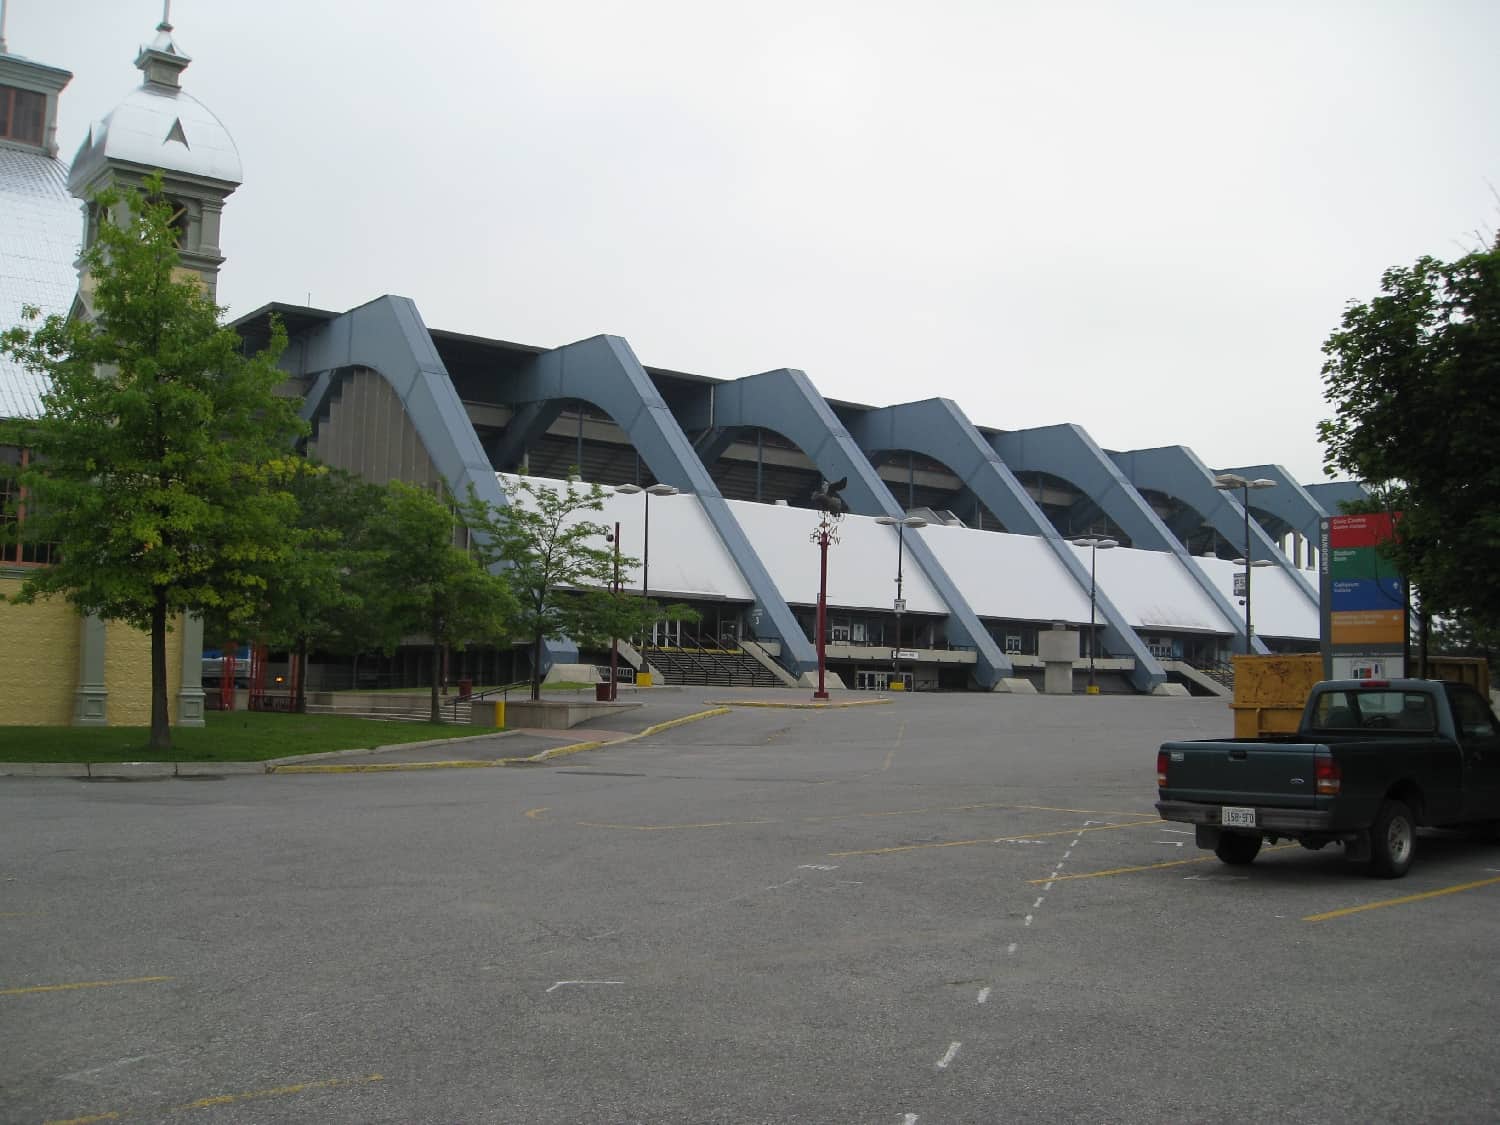 Ottawa Civic Centre